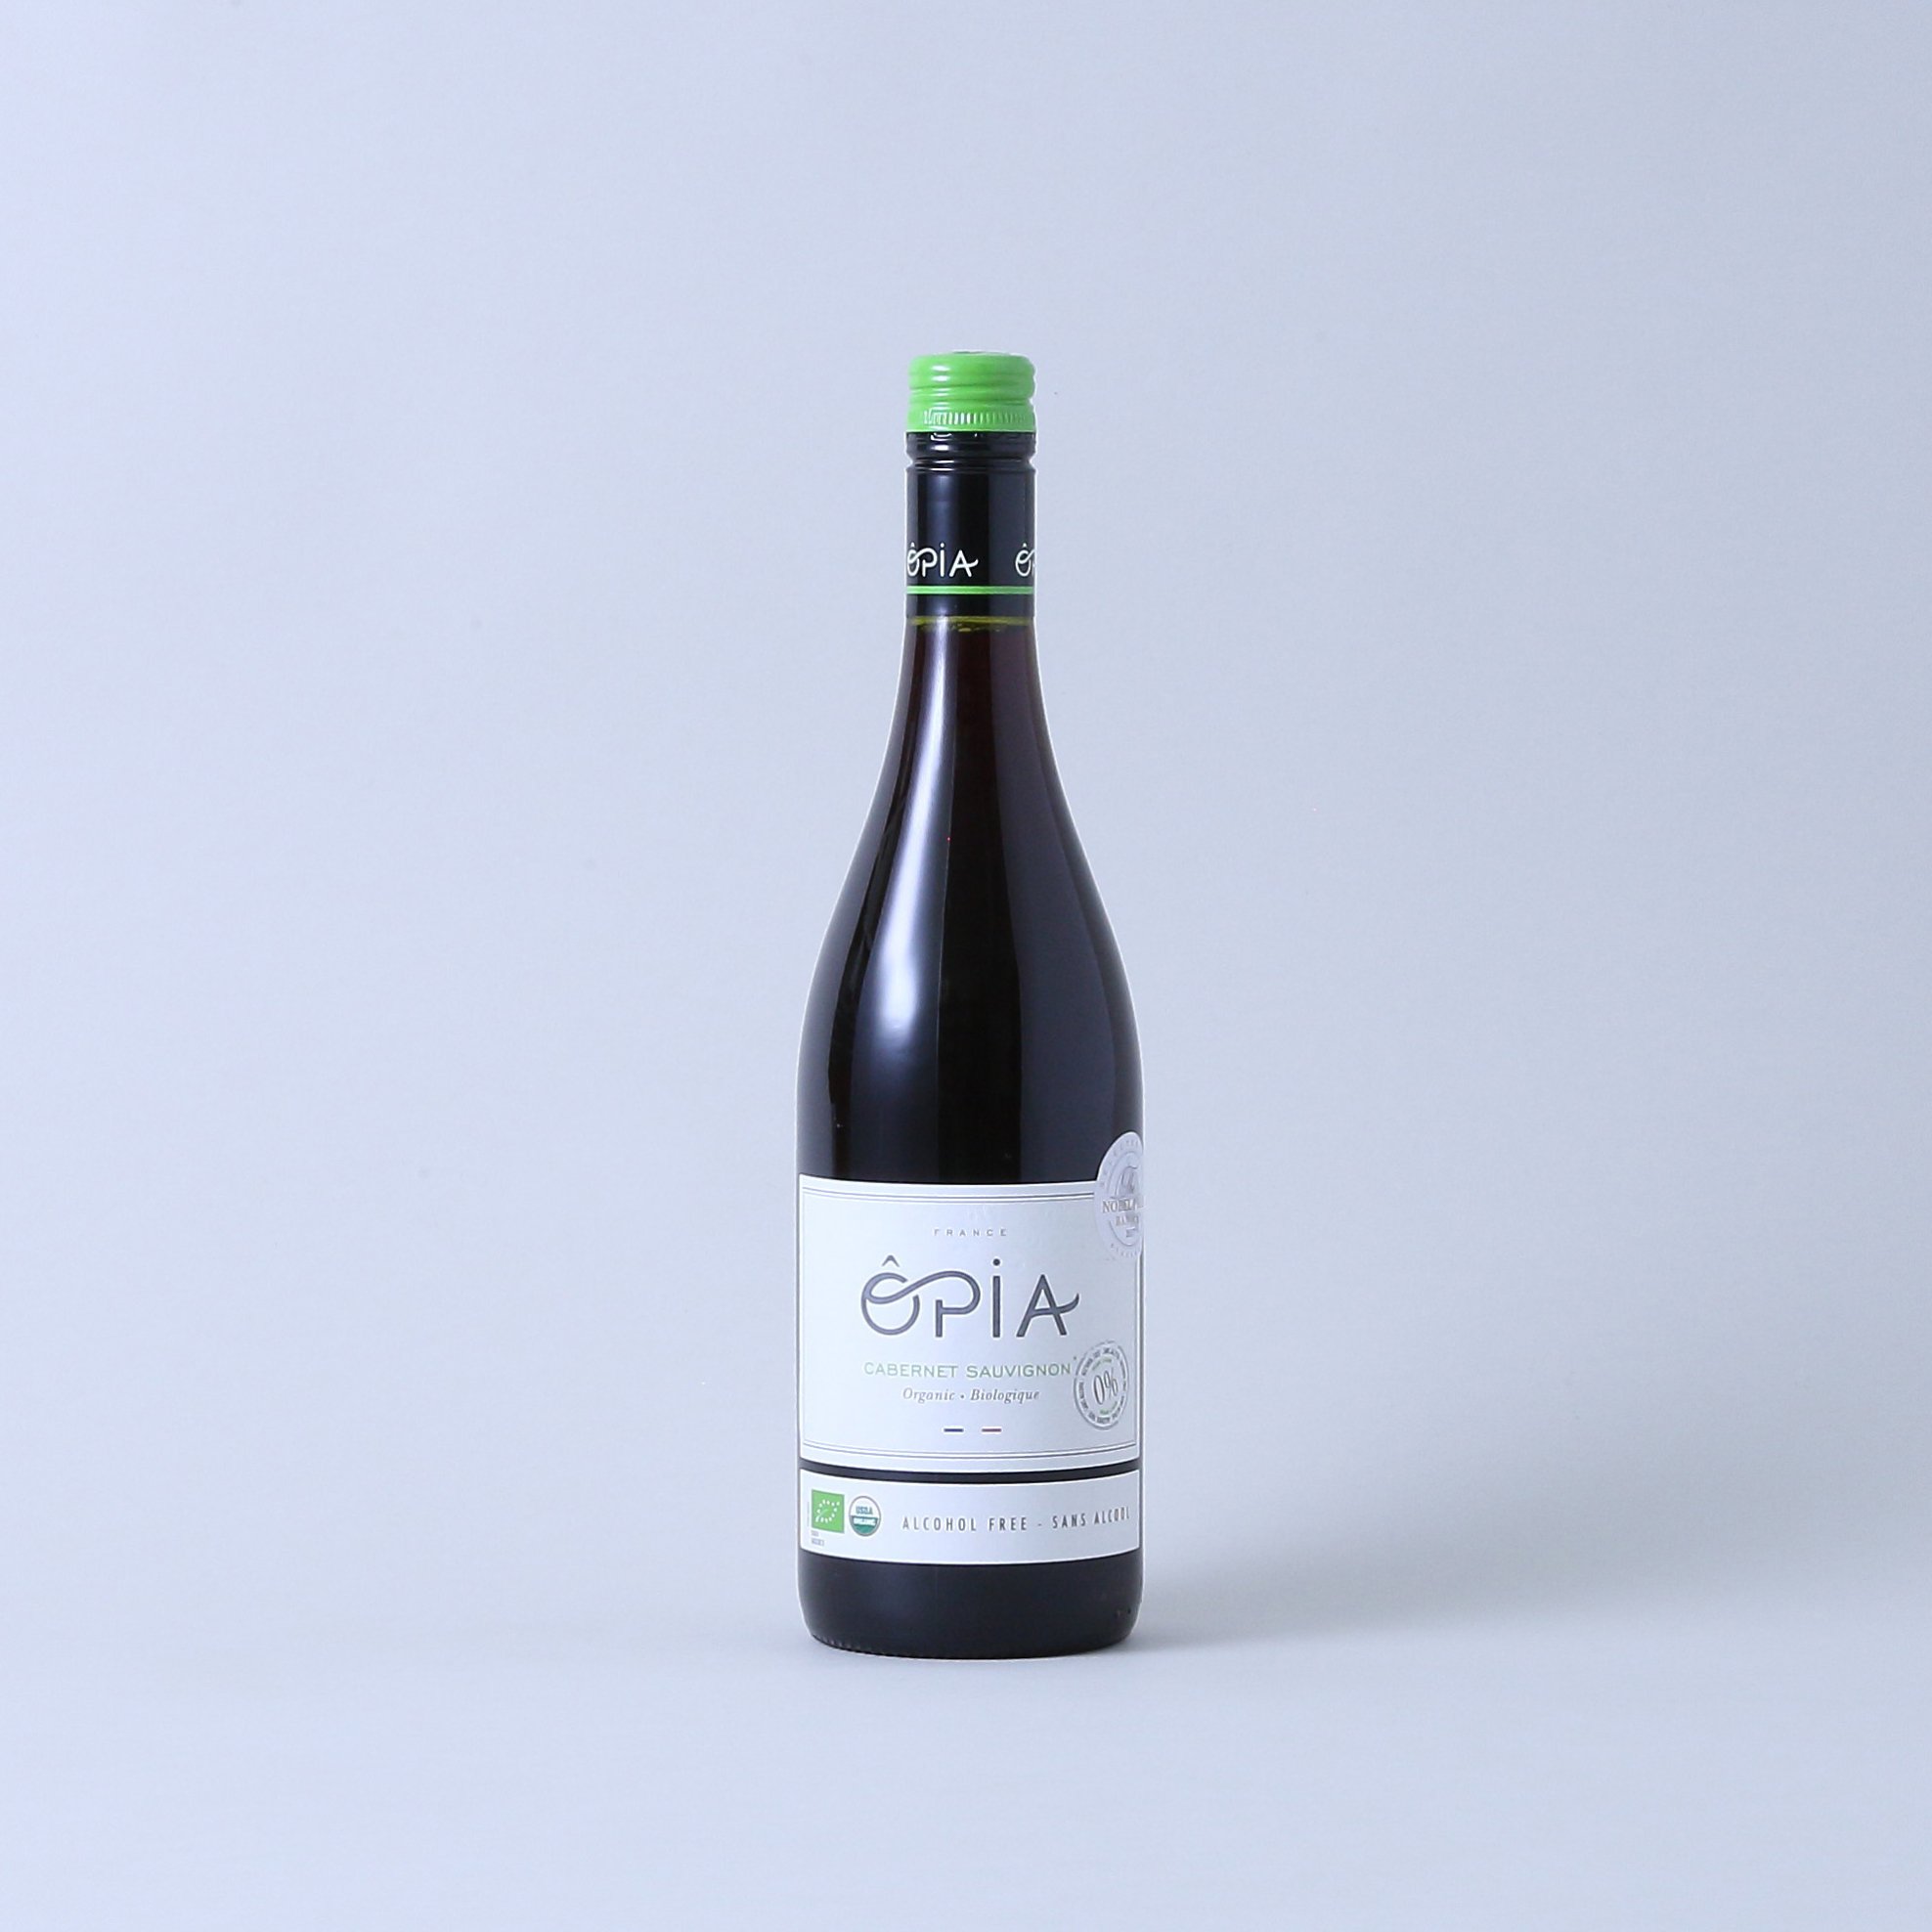 OPIA オピア カベルネソーヴィニヨン ノンアルコール 赤ワイン